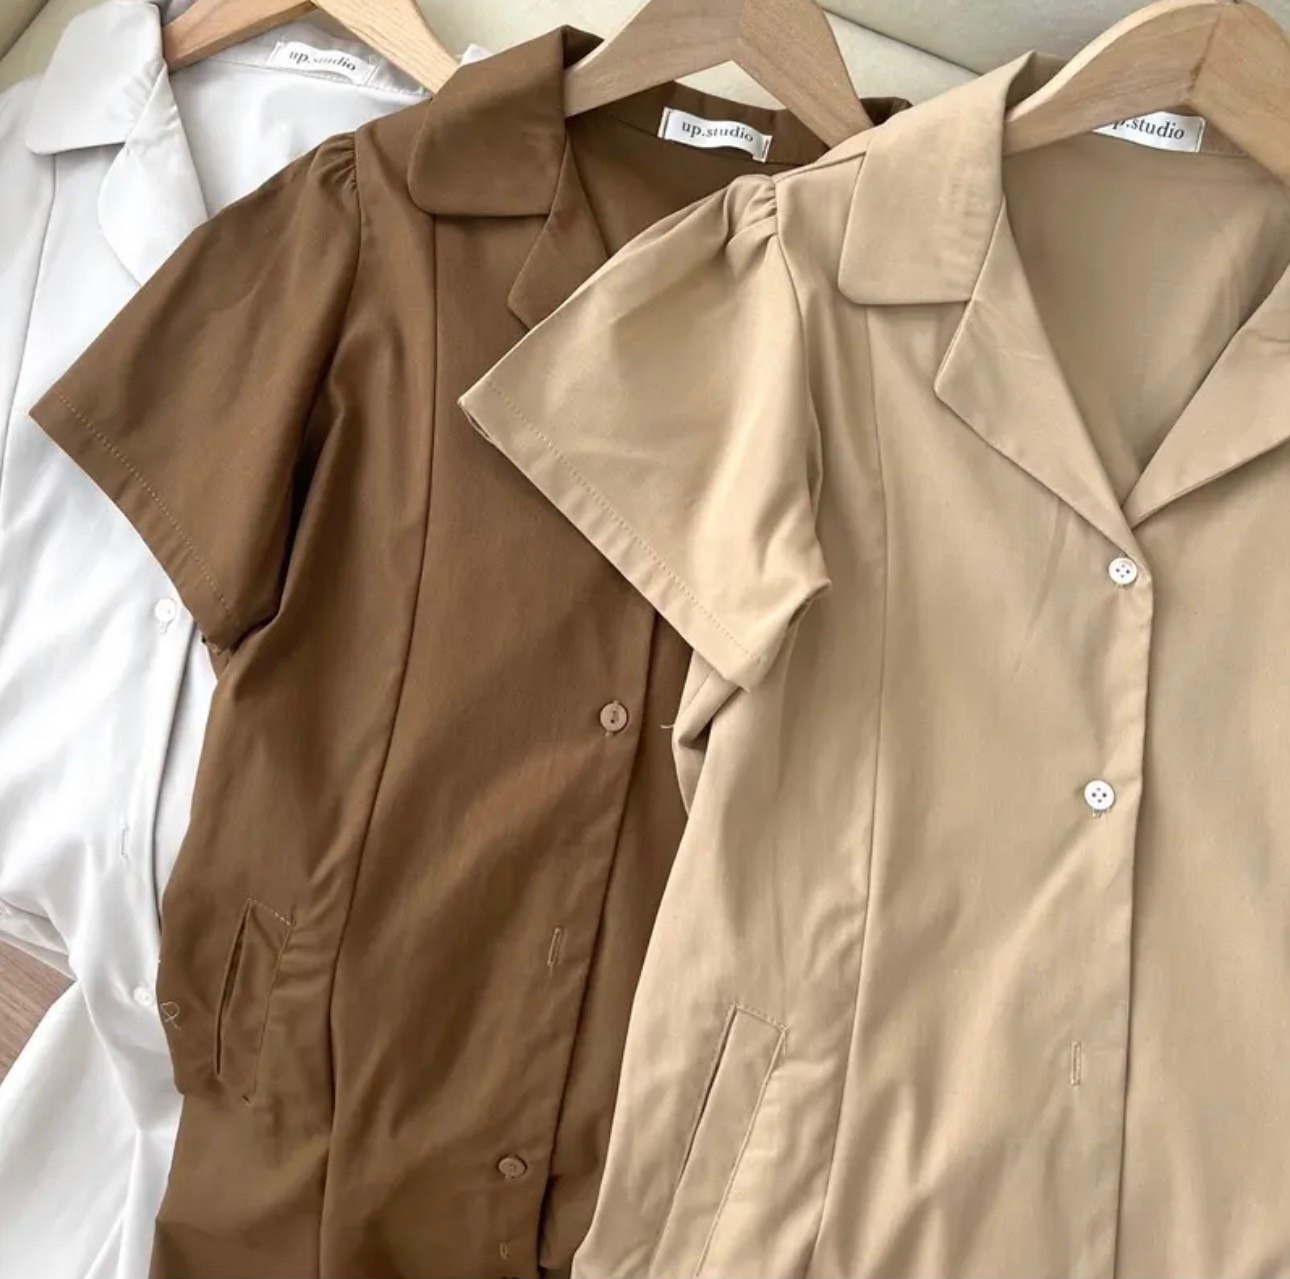 Áo kiểu công sở thời trang Eden cổ vest dáng ngắn - ASM193 – EDS Hàng Mỹ